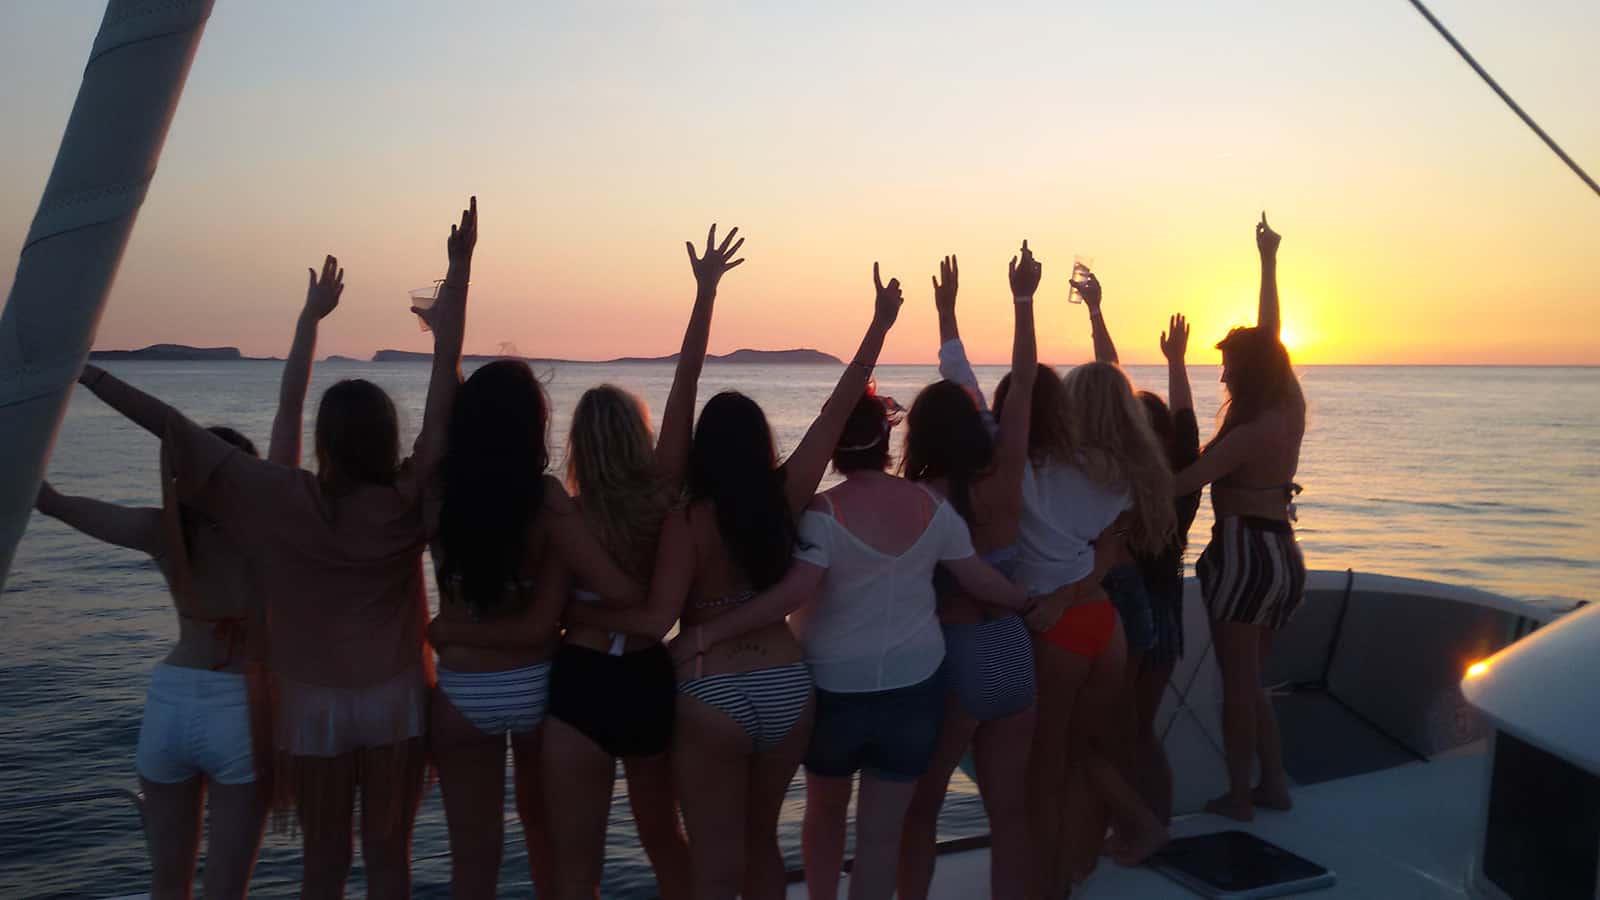 Despedida de soltera catamaran Ibiza, chicas de espaldas levantando los brazos a la puesta de sol.